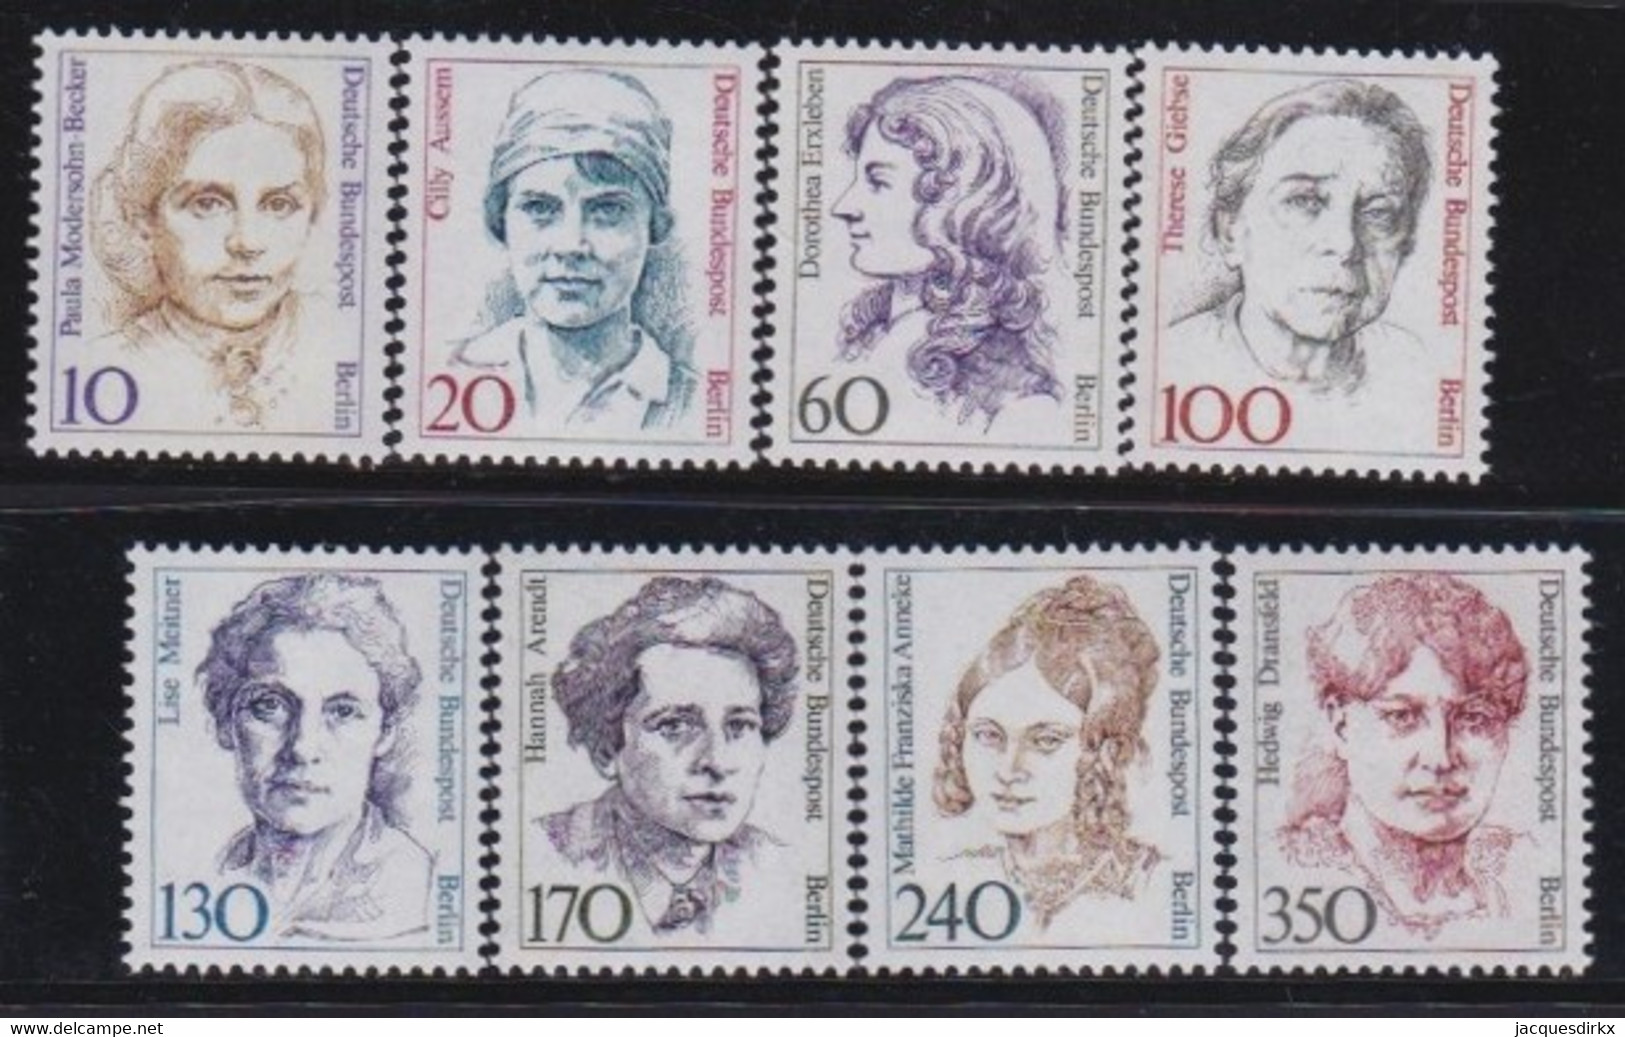 Berlin   .    Michel    8 Marken      .      **   .   Postfrisch - Unused Stamps